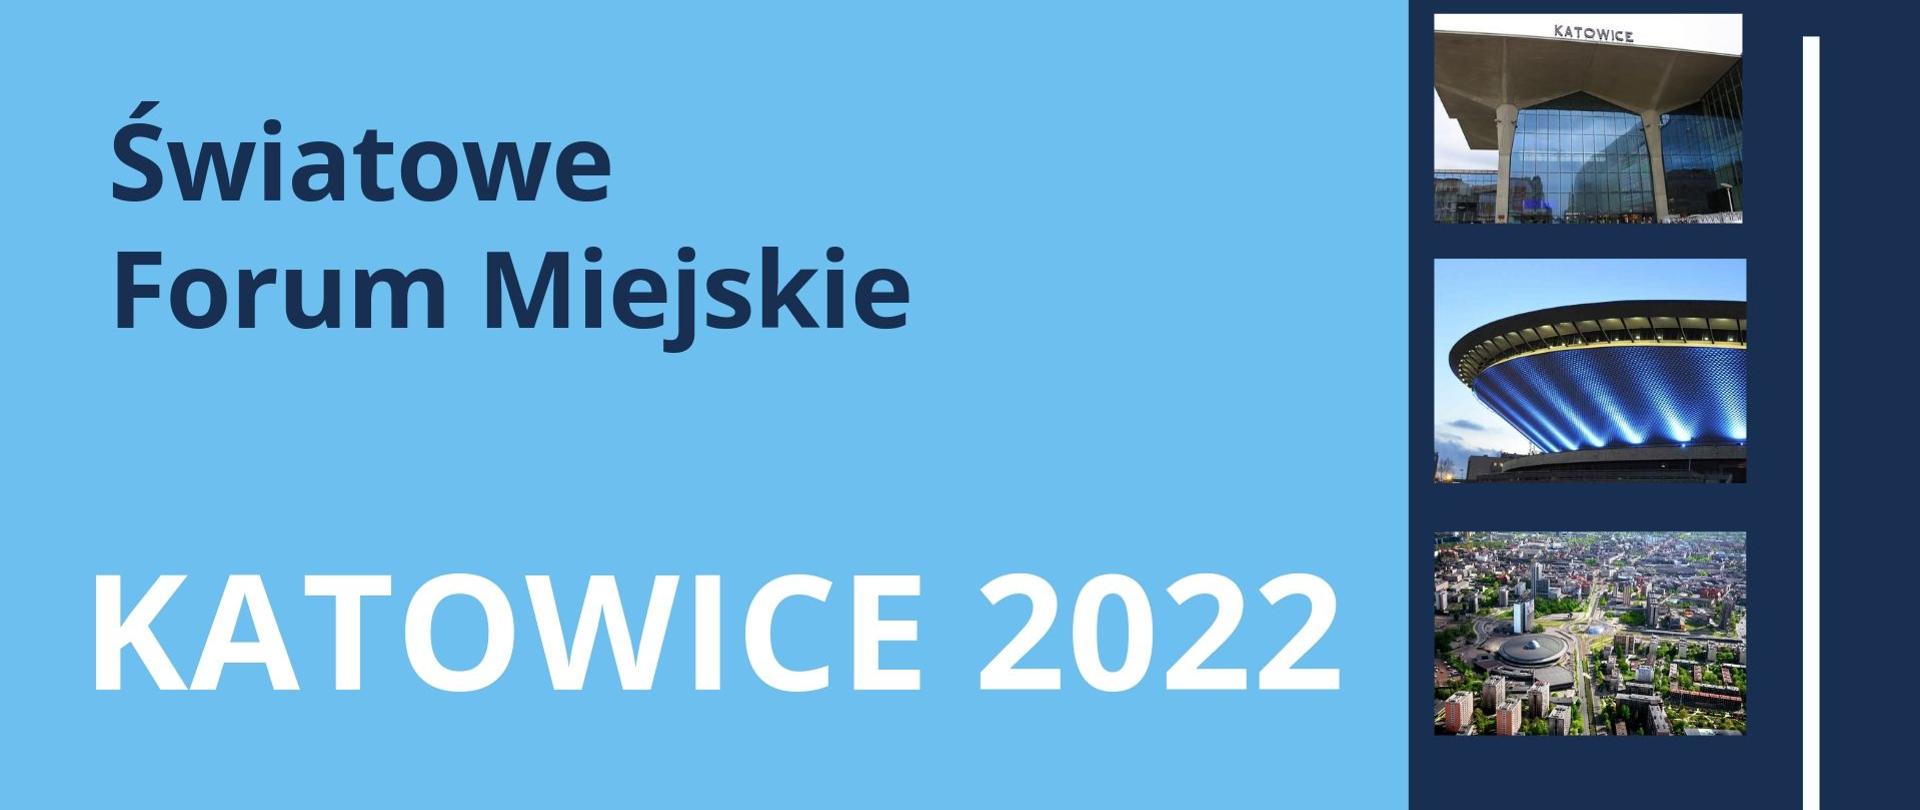 Grafika z białym napisem "Światowe Forum Miejskie, Katowice 2022"na błękitnym tle, po prawej stronie trzy zdjęcia z Katowic.